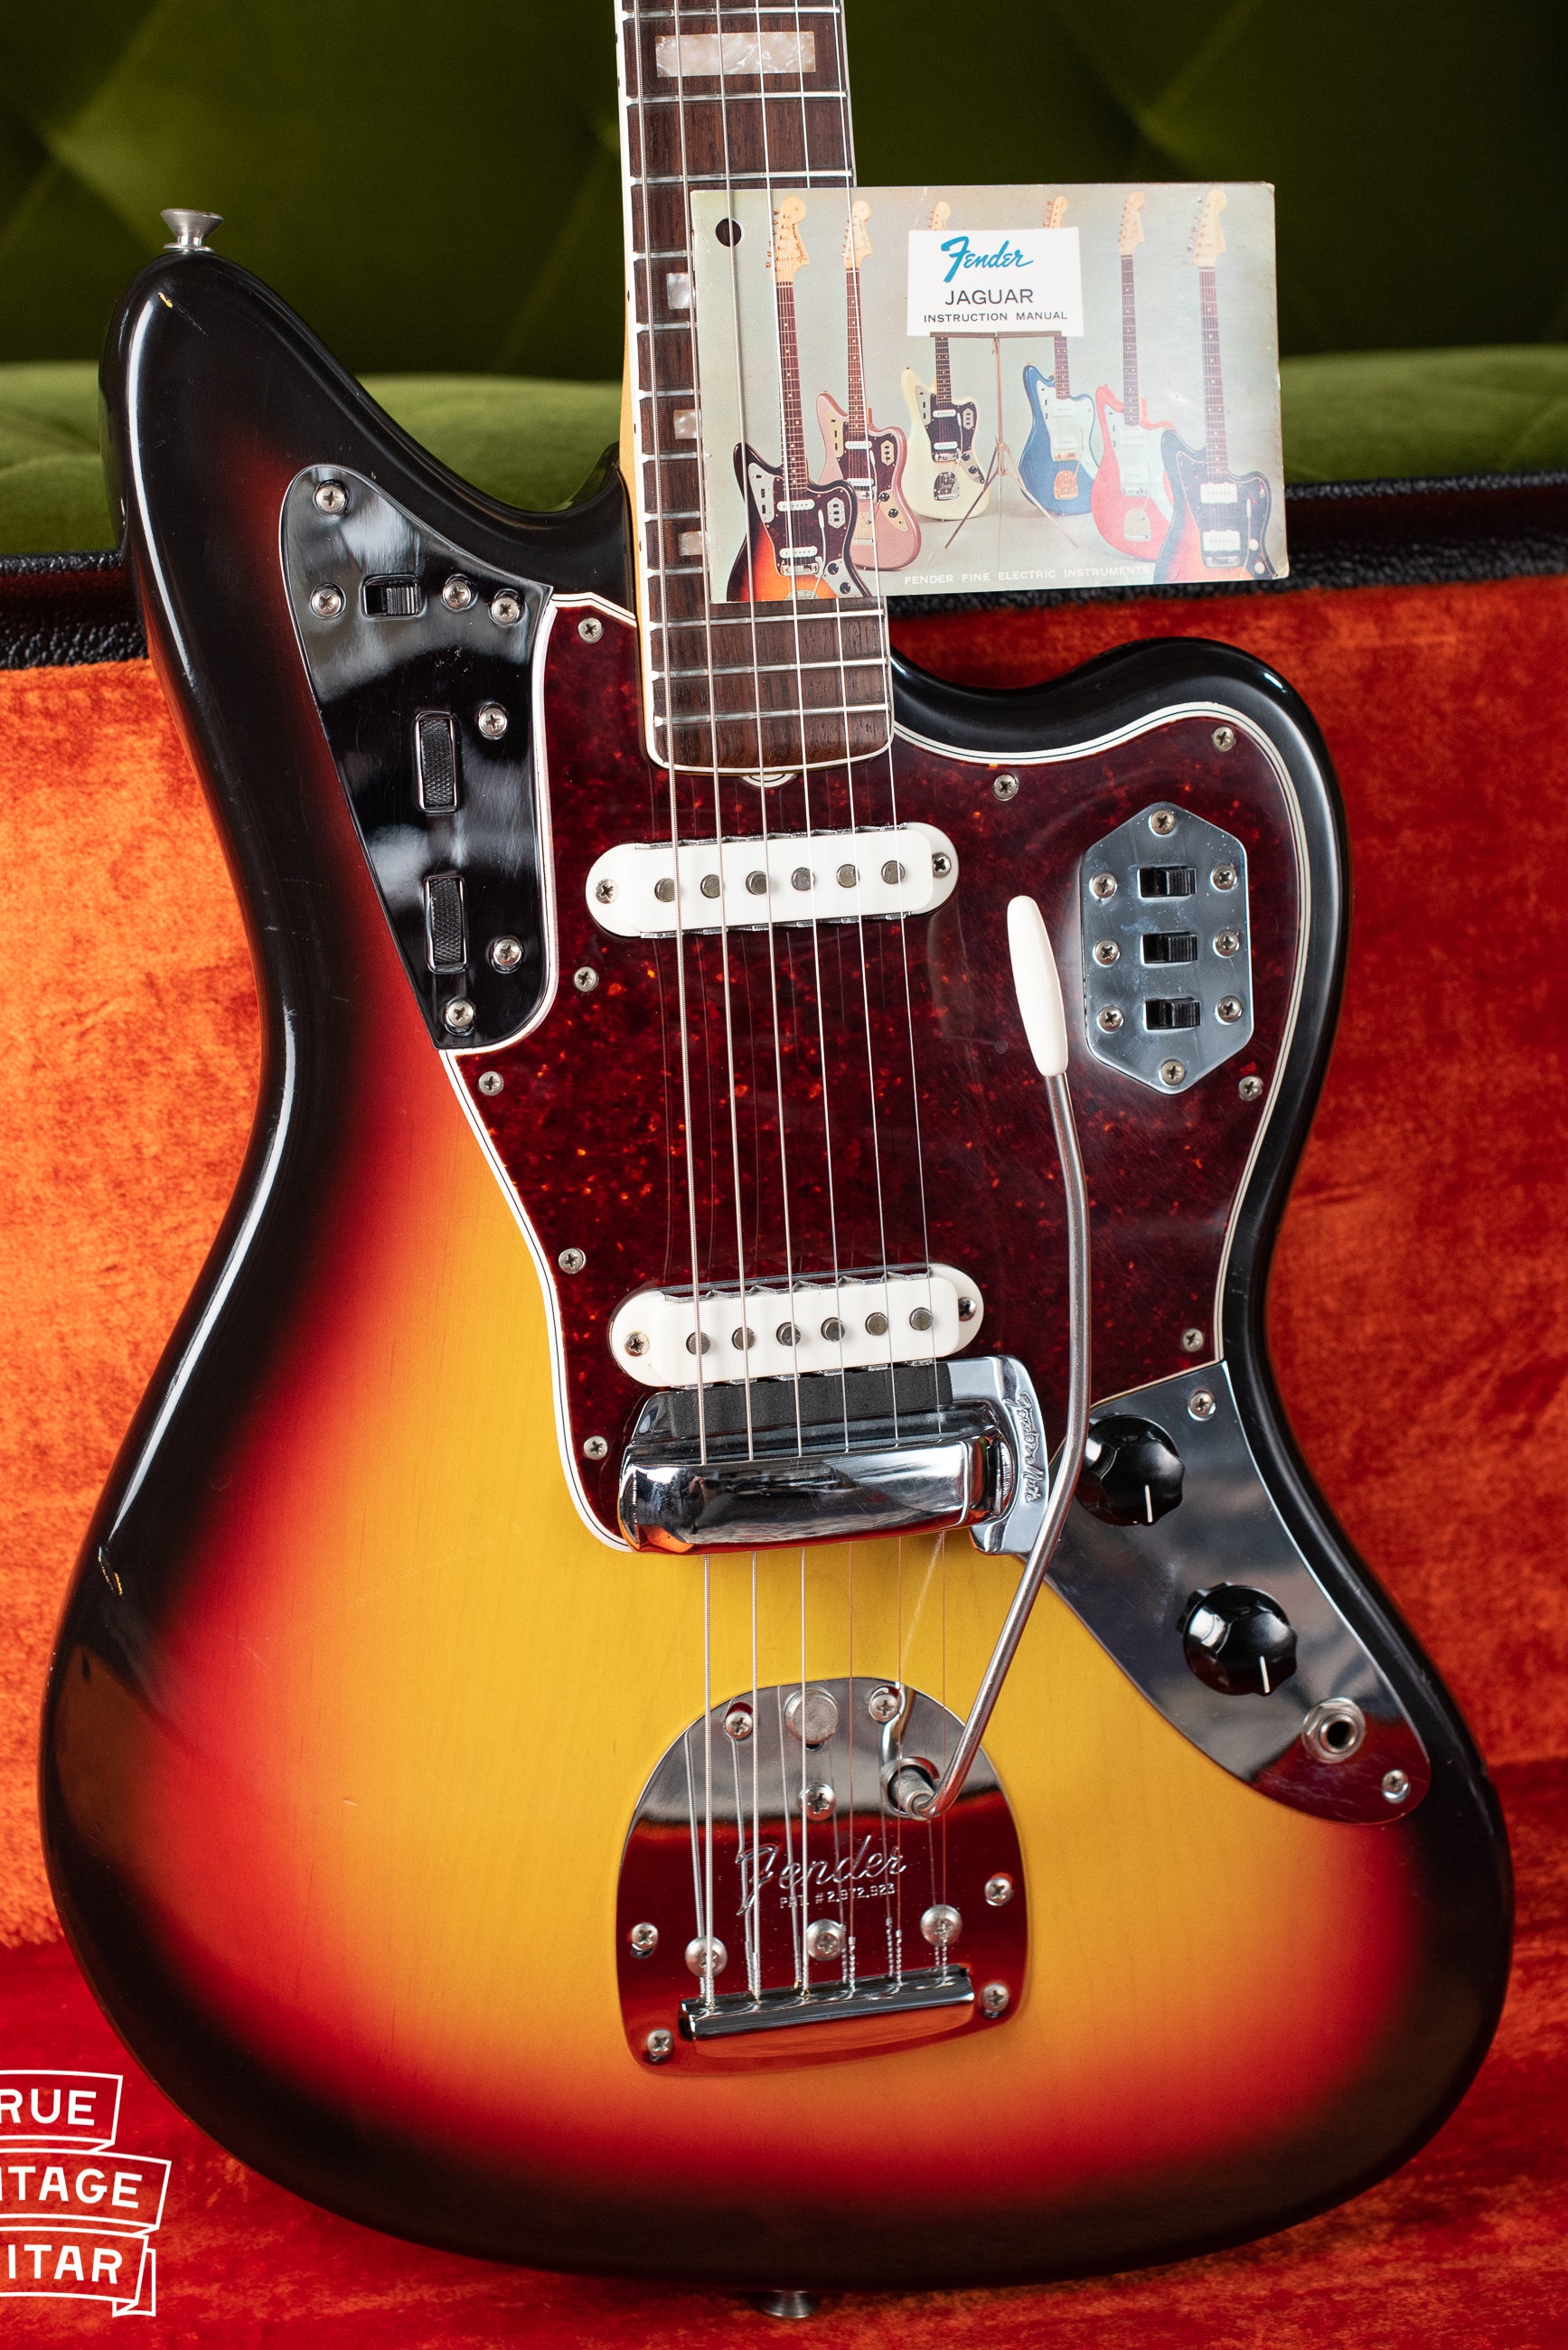 Original tag, instruction manual, Vintage 1966 Fender Jaguar Sunburst